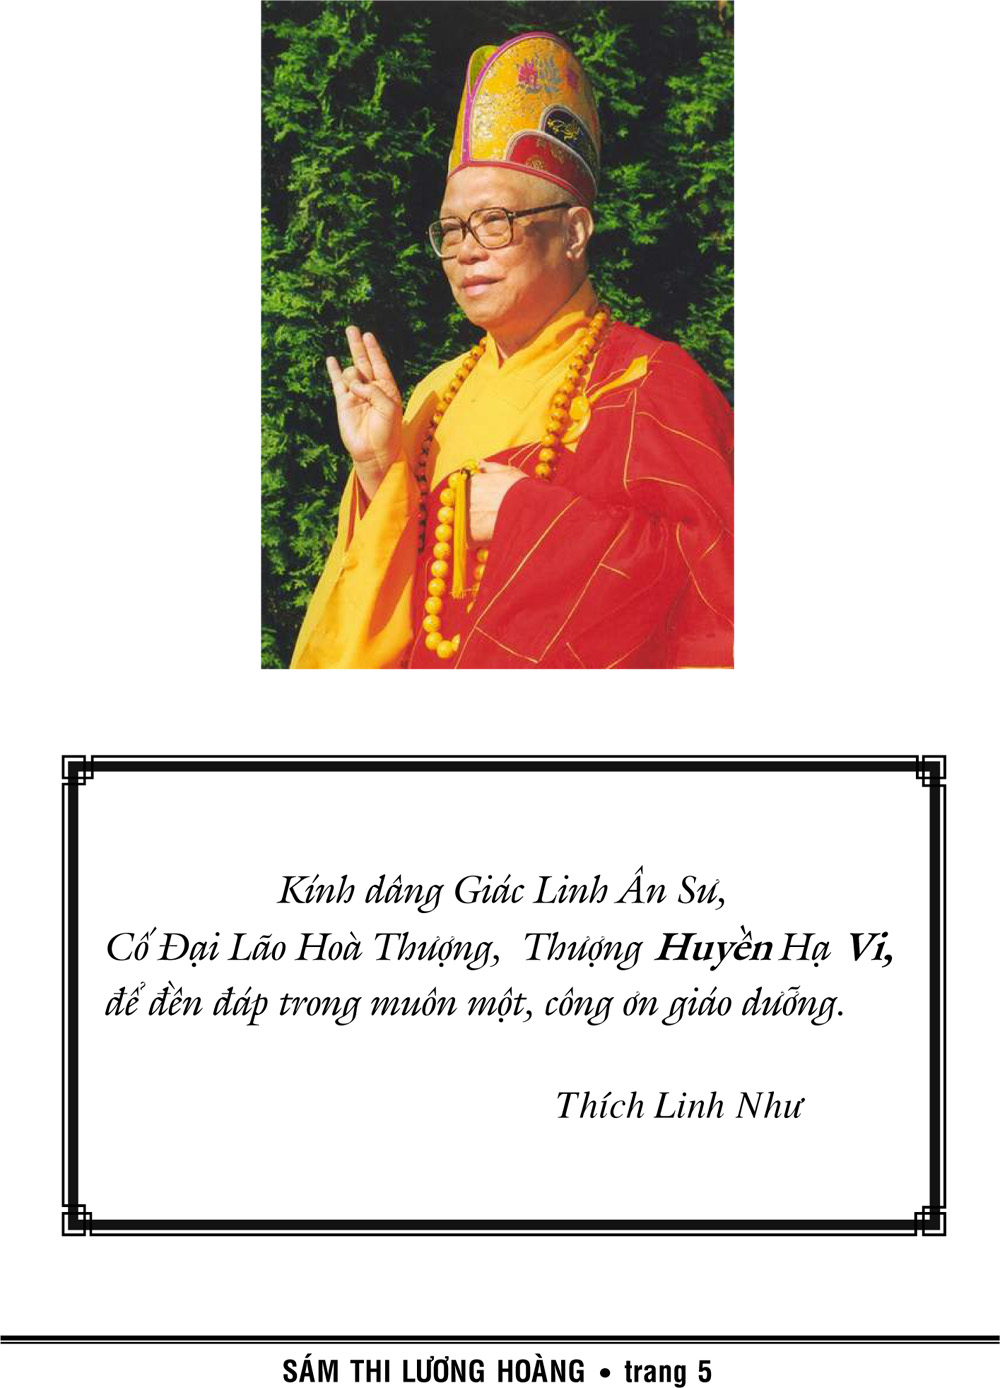 Luong Hoang Sam Thi Hoa_Thich Linh Nhu-2